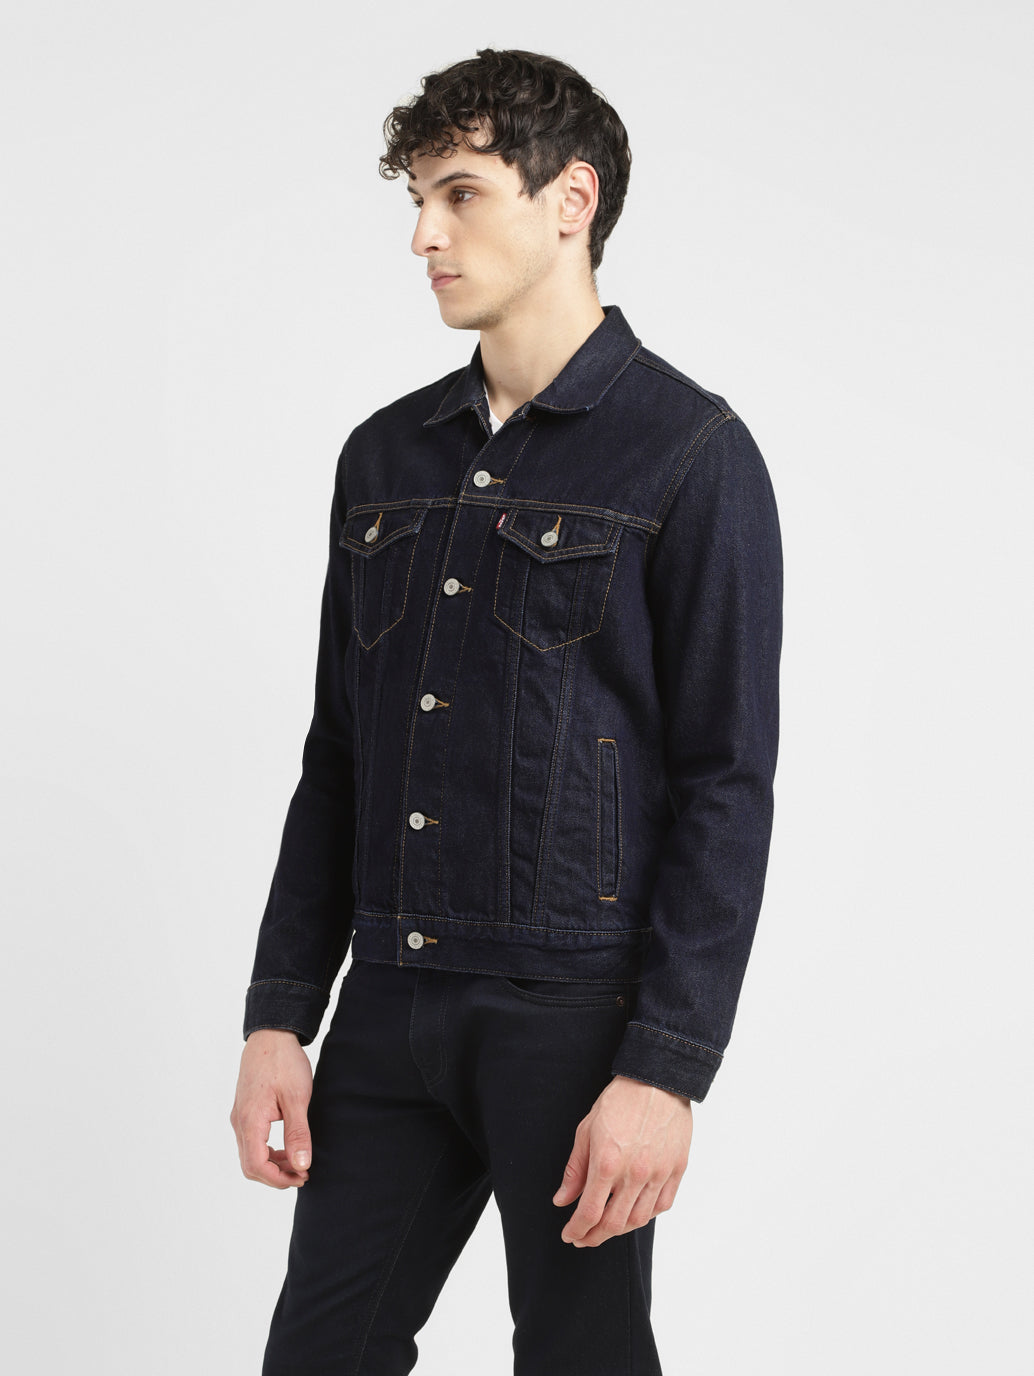 Men's Embroidered Dark Indigo Spread Collar Jacket